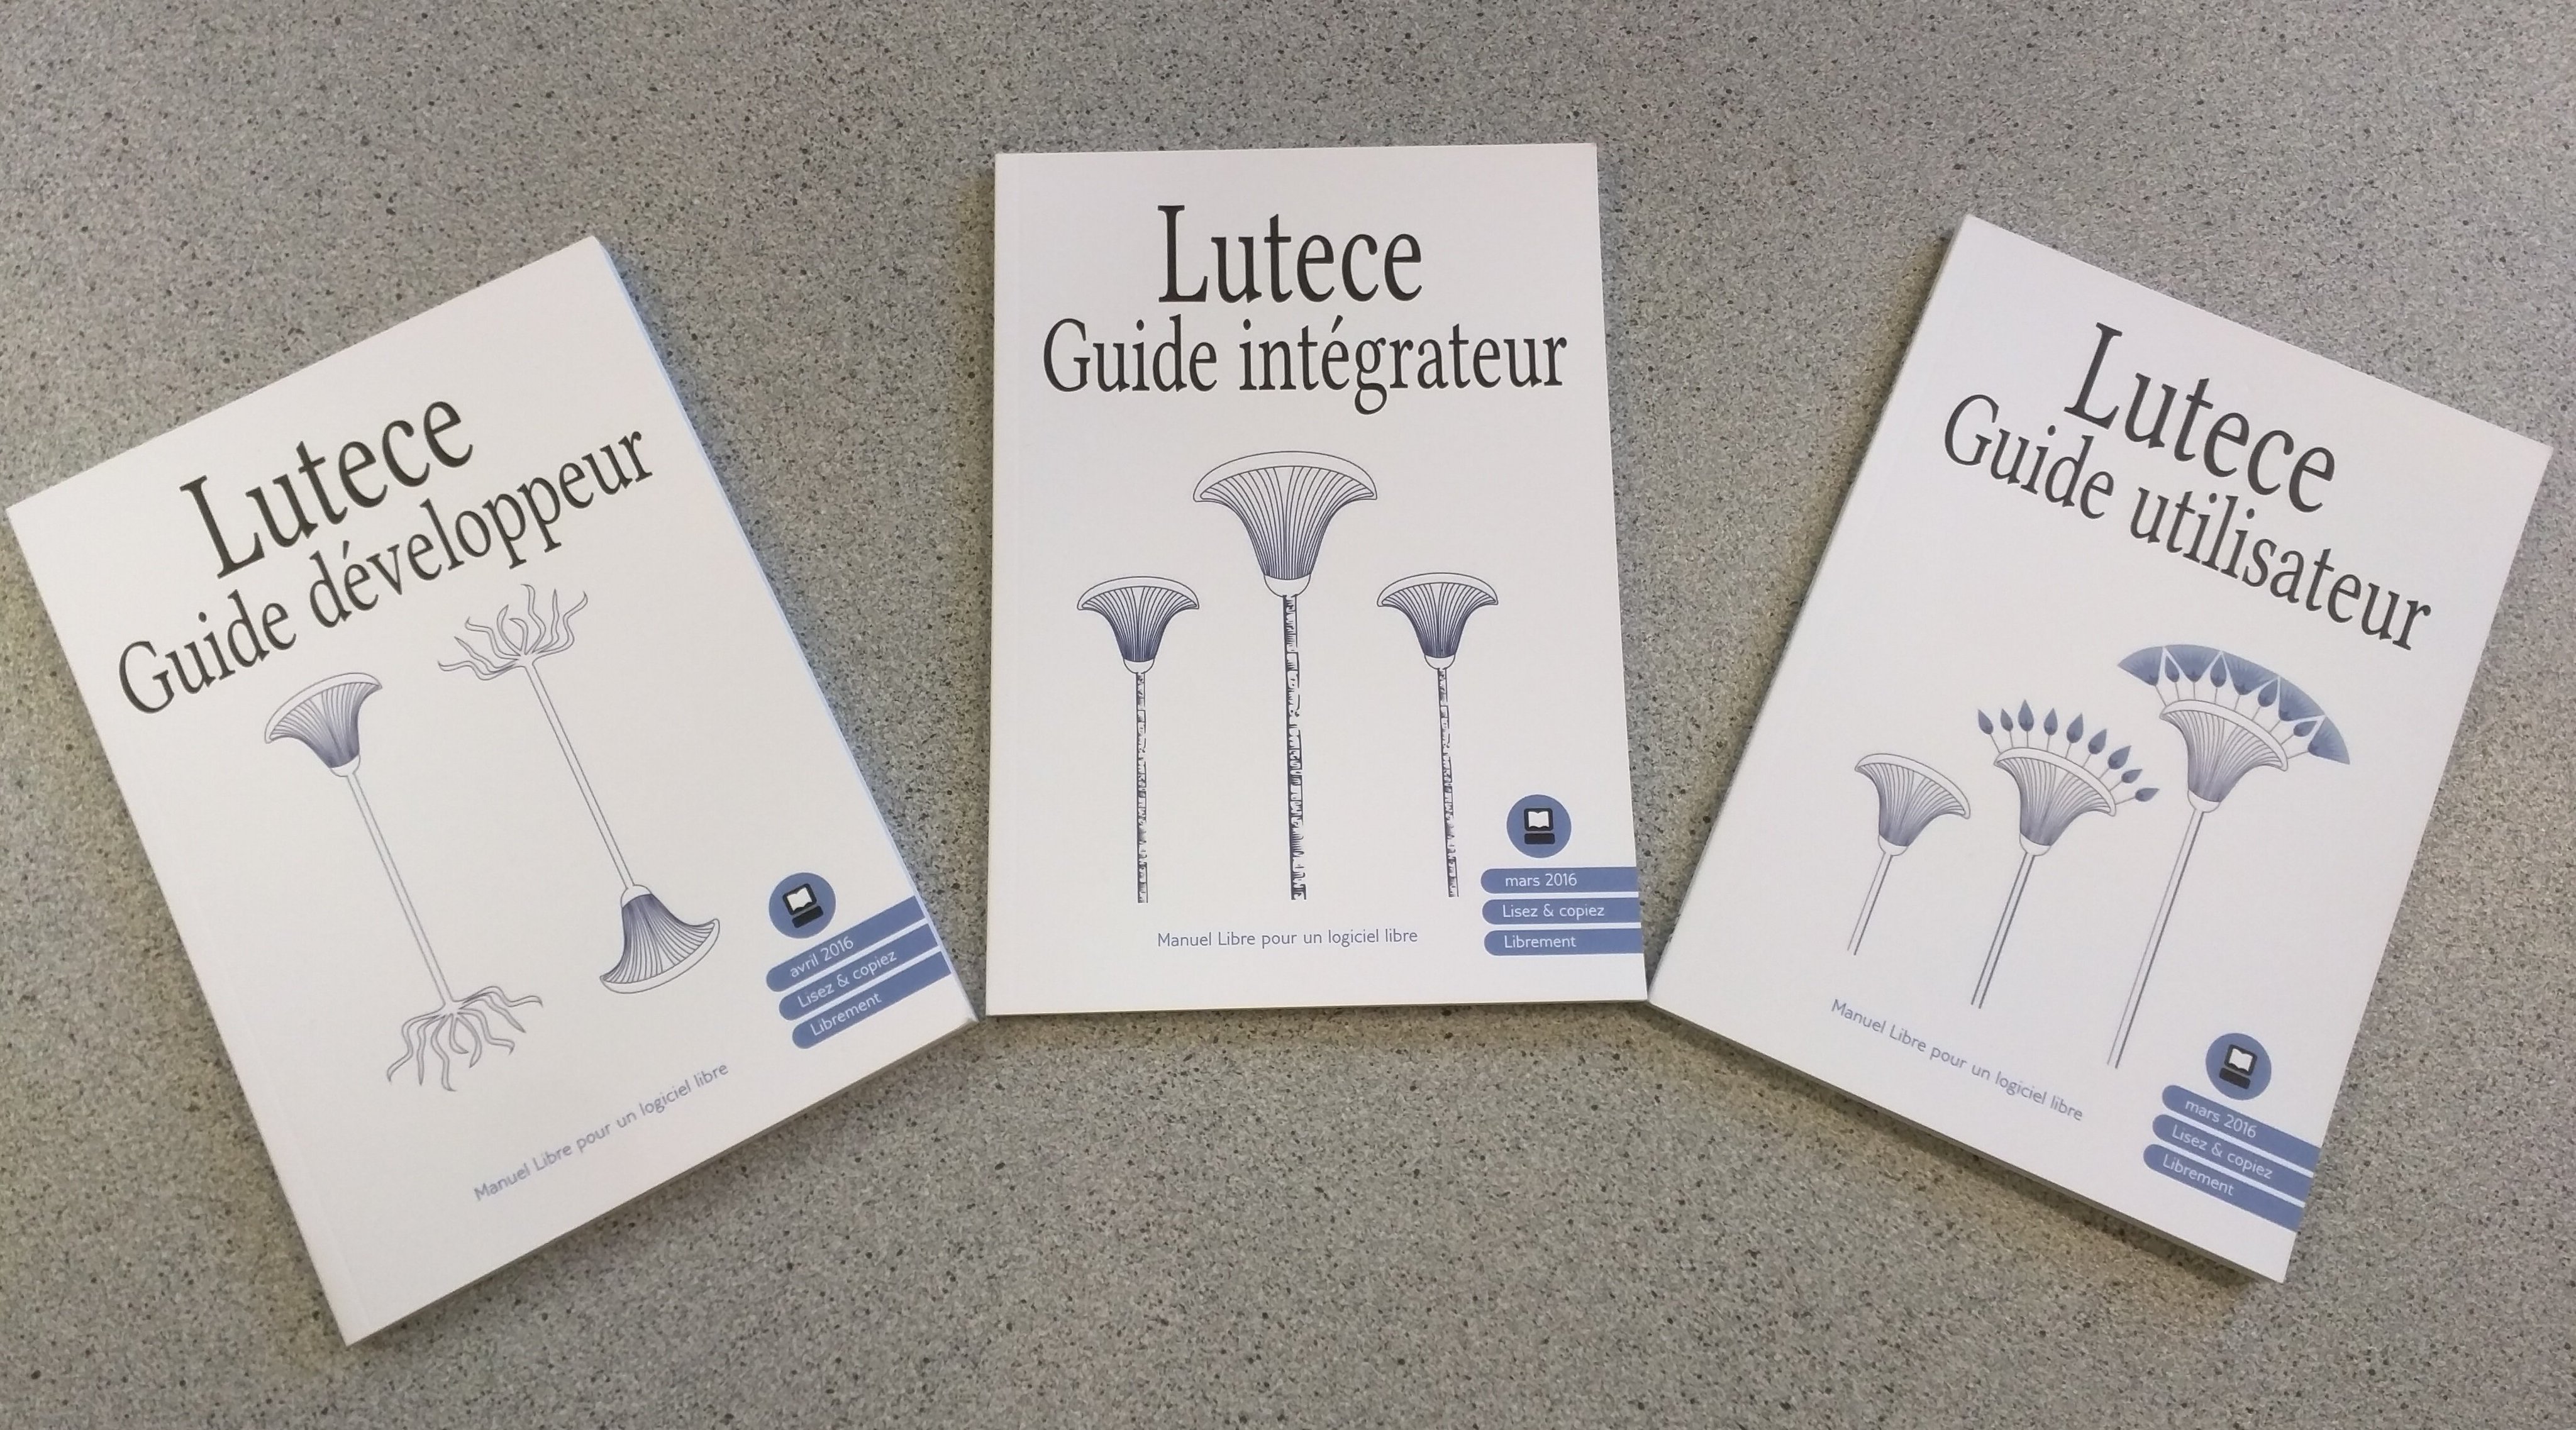 Lutece got its own floss Manuals!